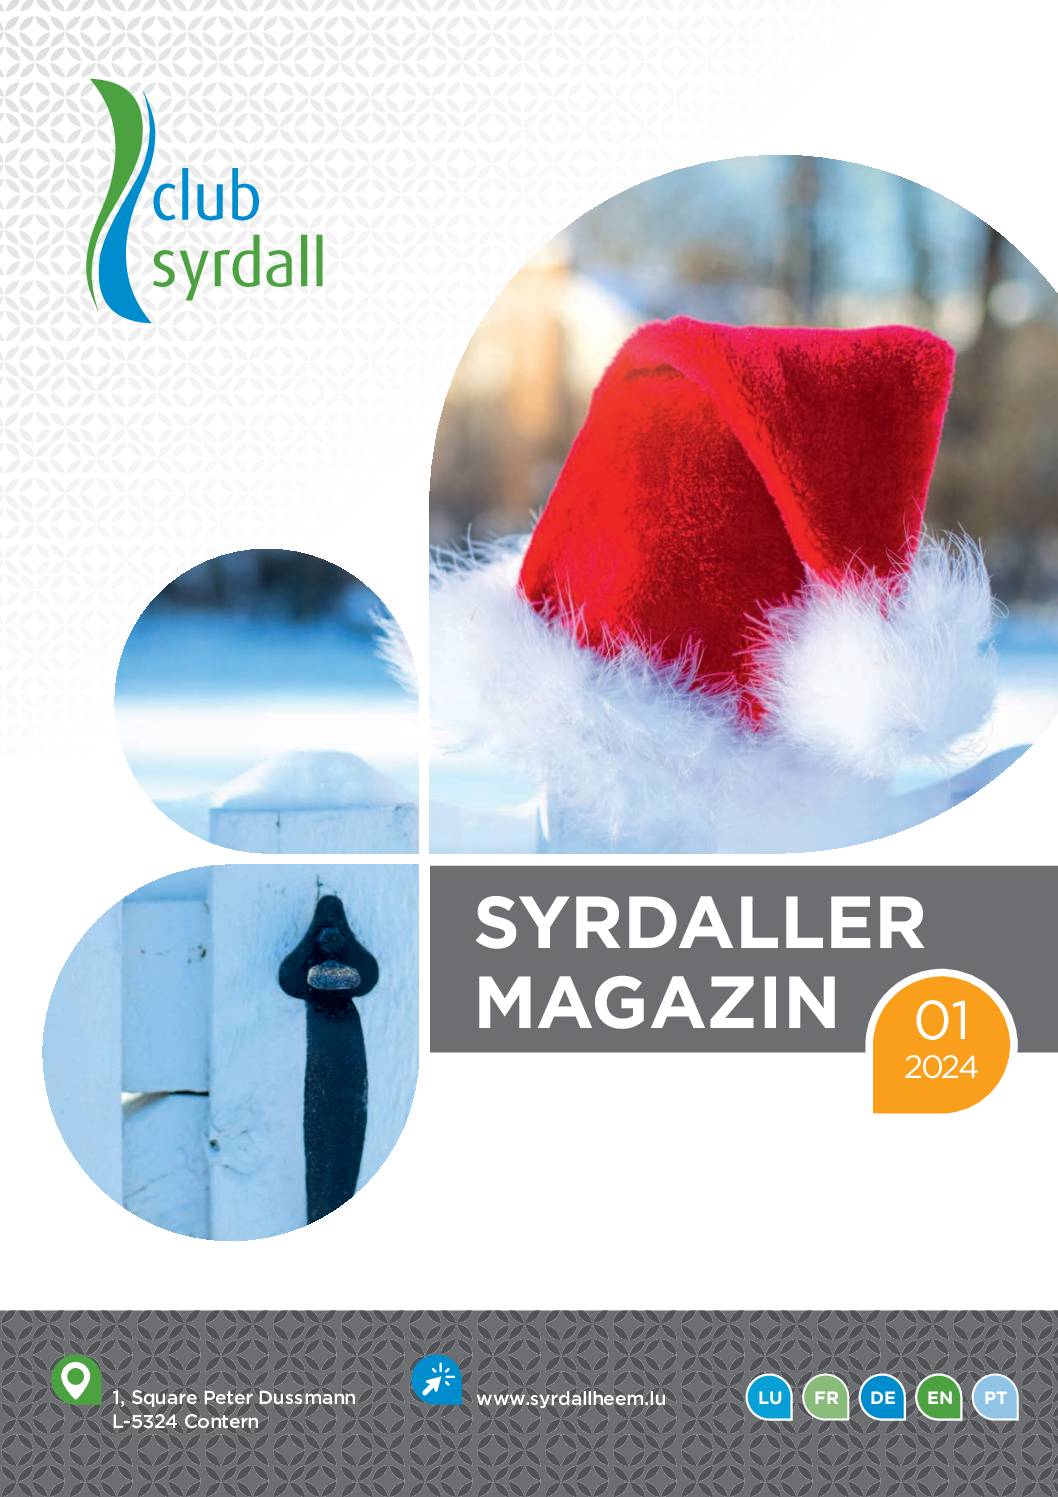 club syrdall Bro Syrdaller Magazin 012024 97635